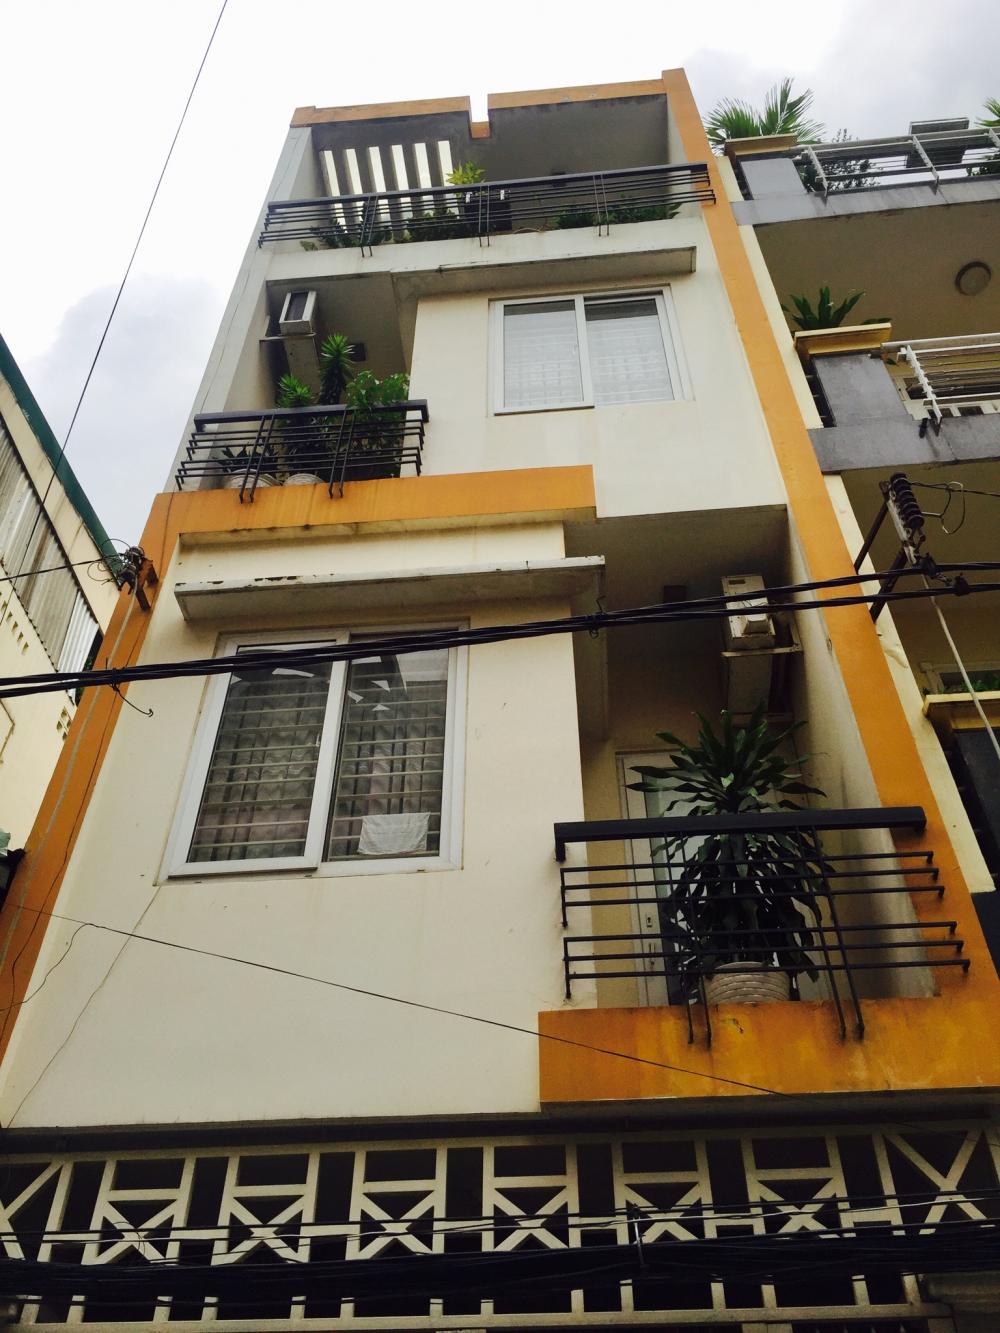 Bán nhà 2 mặt tiền đường Phổ Quang, DT: 118.5 m2, nhà 3 lầu đẹp, cần bán gấp giá rẻ